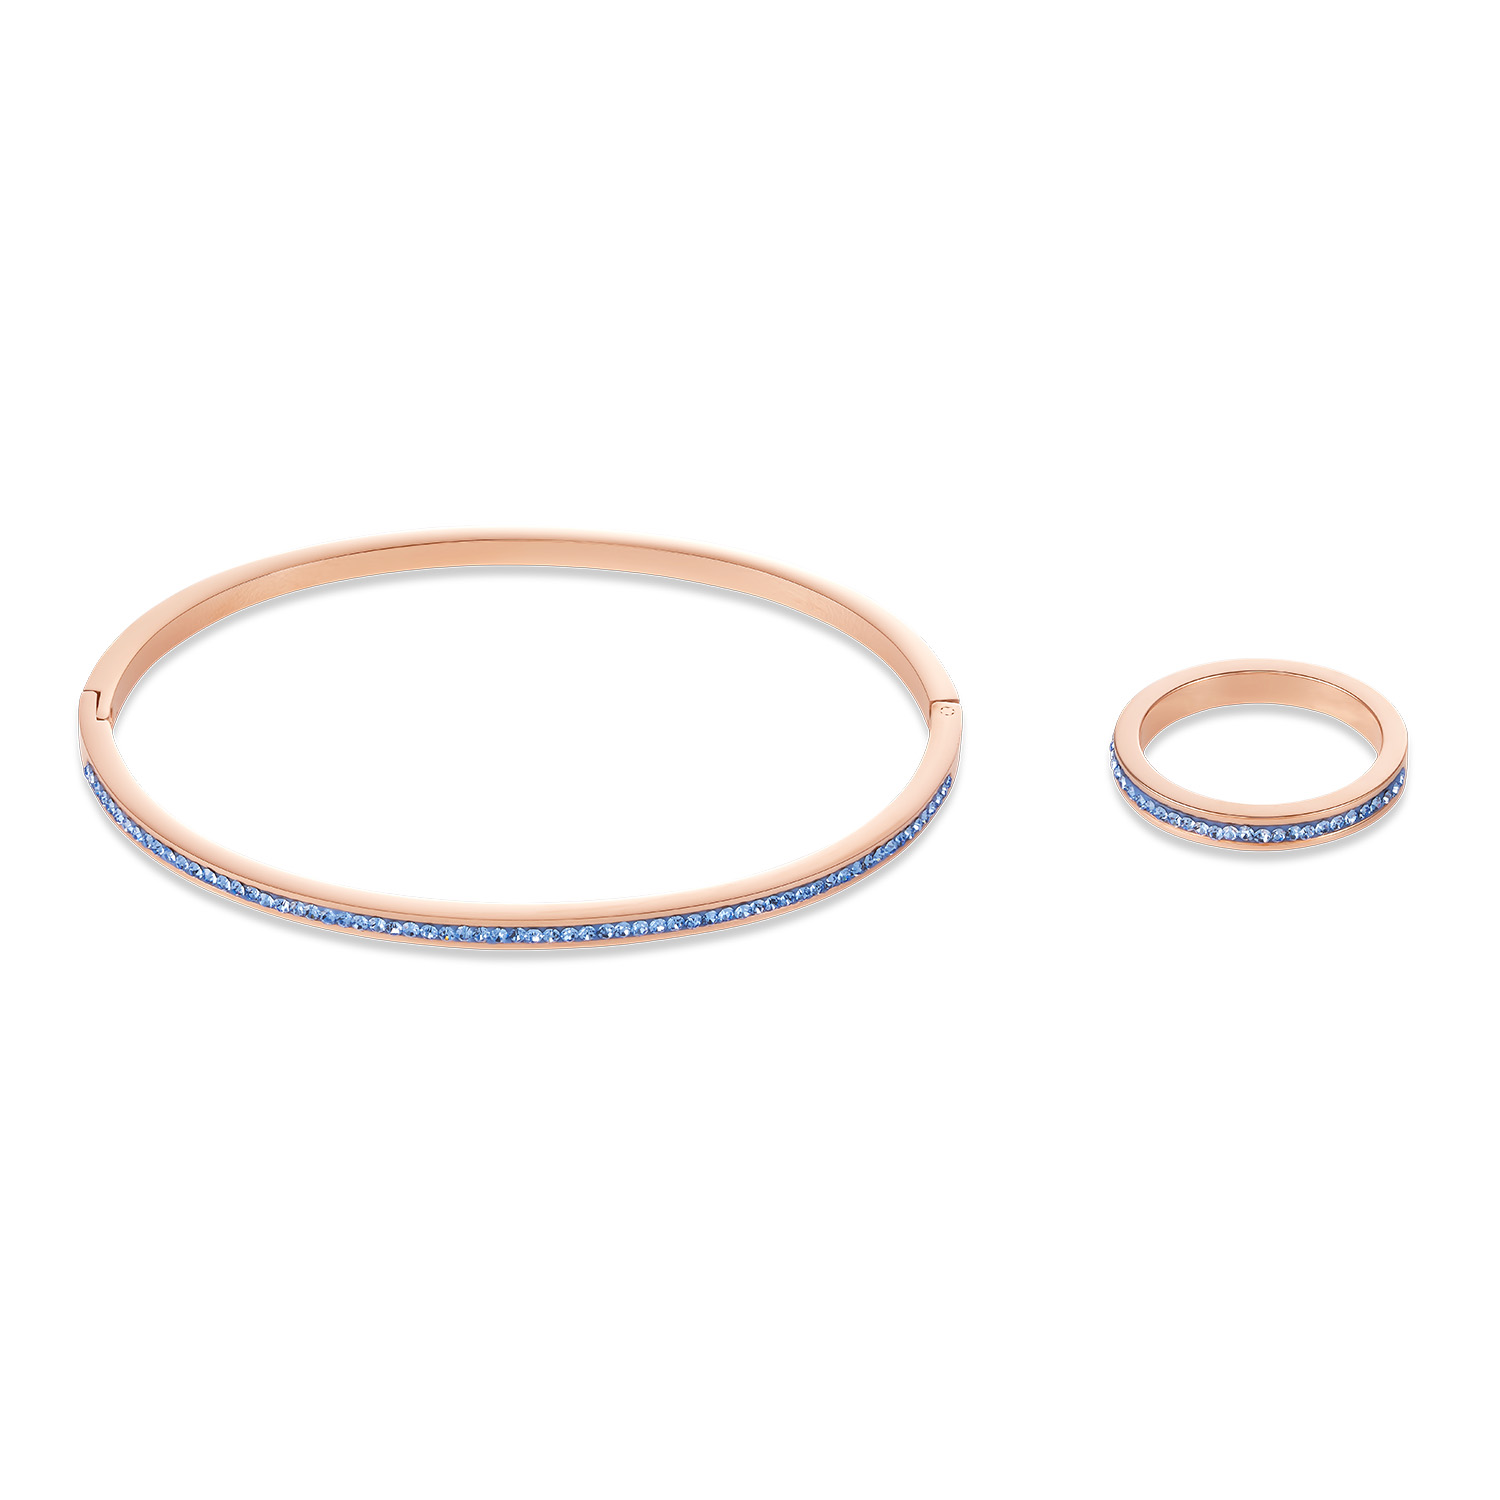 Groothandel OEM / ODM Juweliersware roosgoud gevulde silwer armband kubieke zirkonia pasgemaakte groothandel vervaardiger